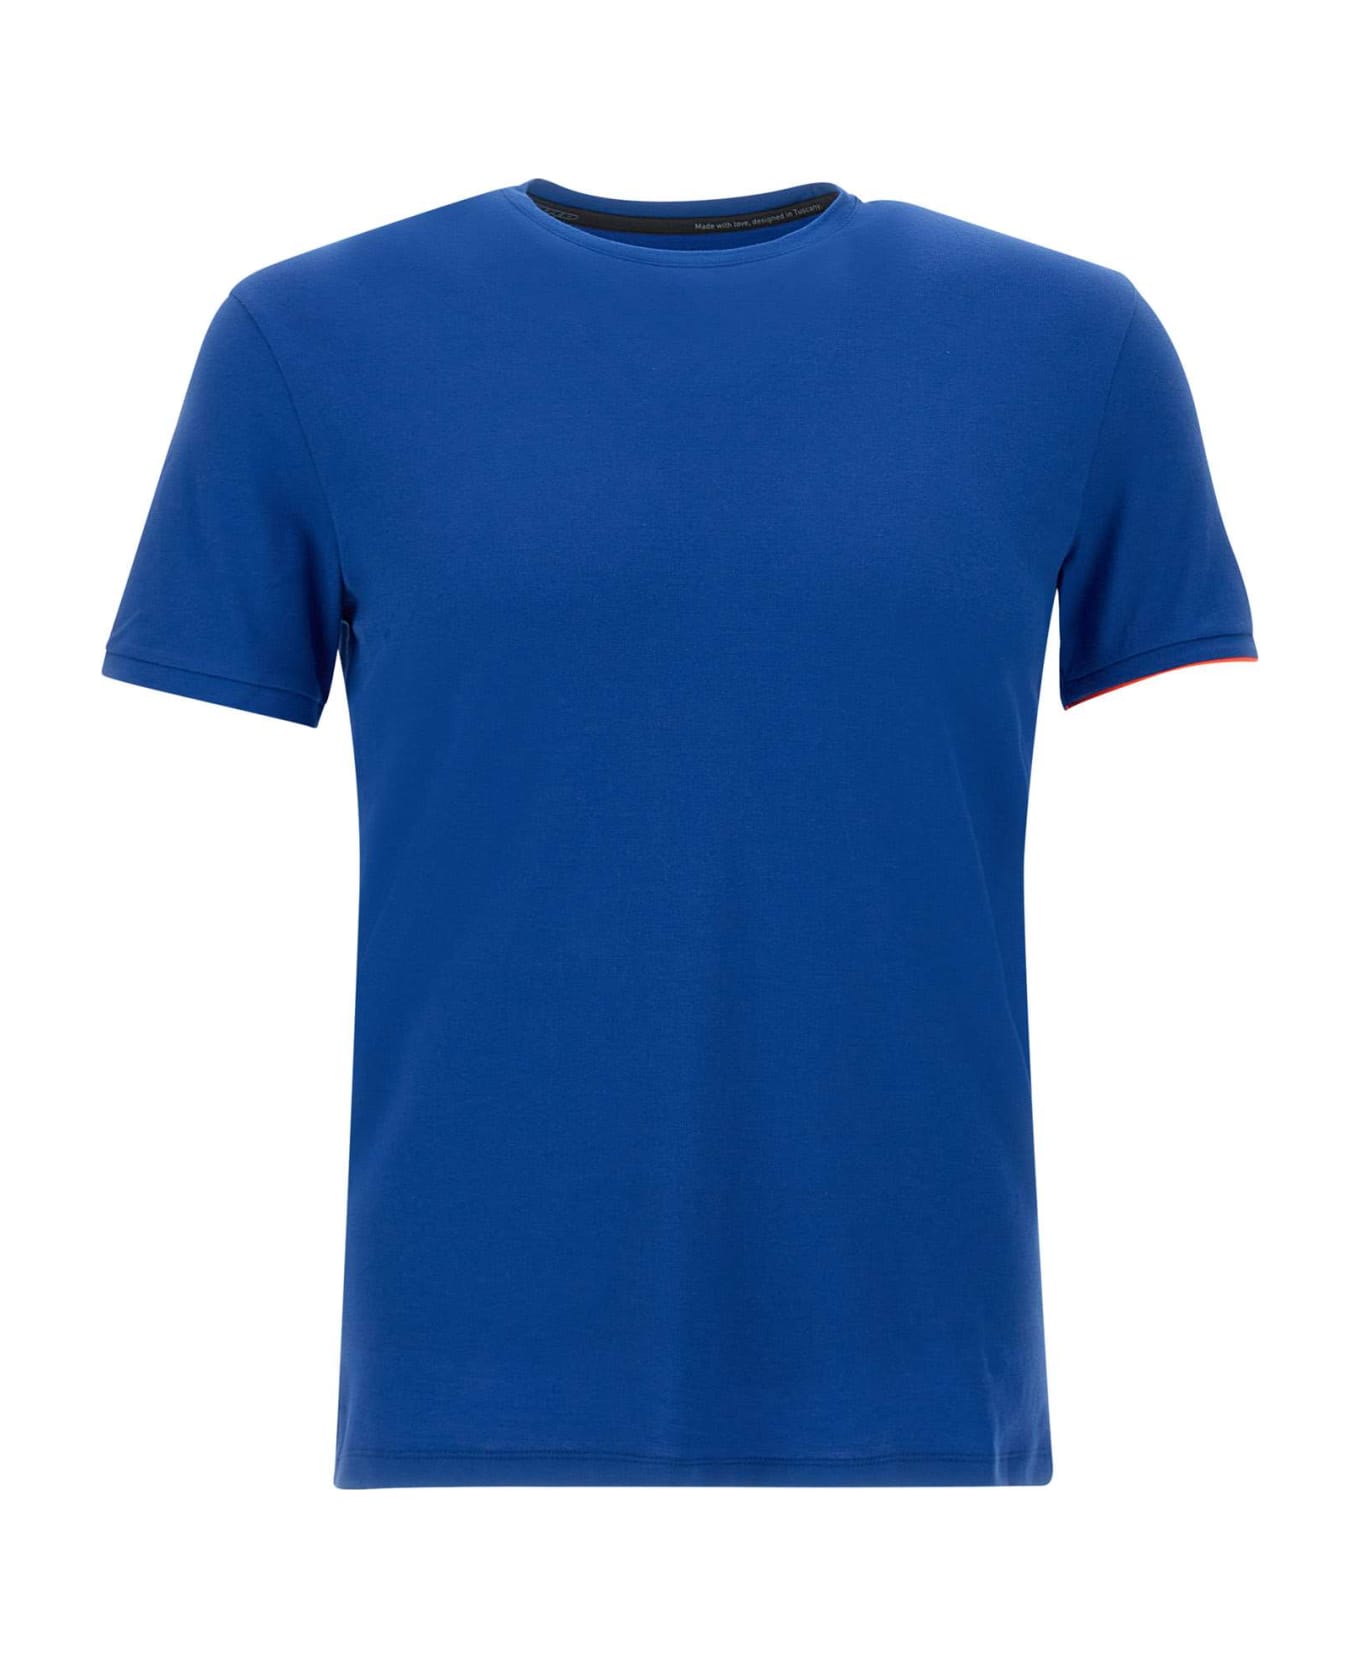 RRD - Roberto Ricci Design 'shirty Macro' T-shirt - Blu New Royal